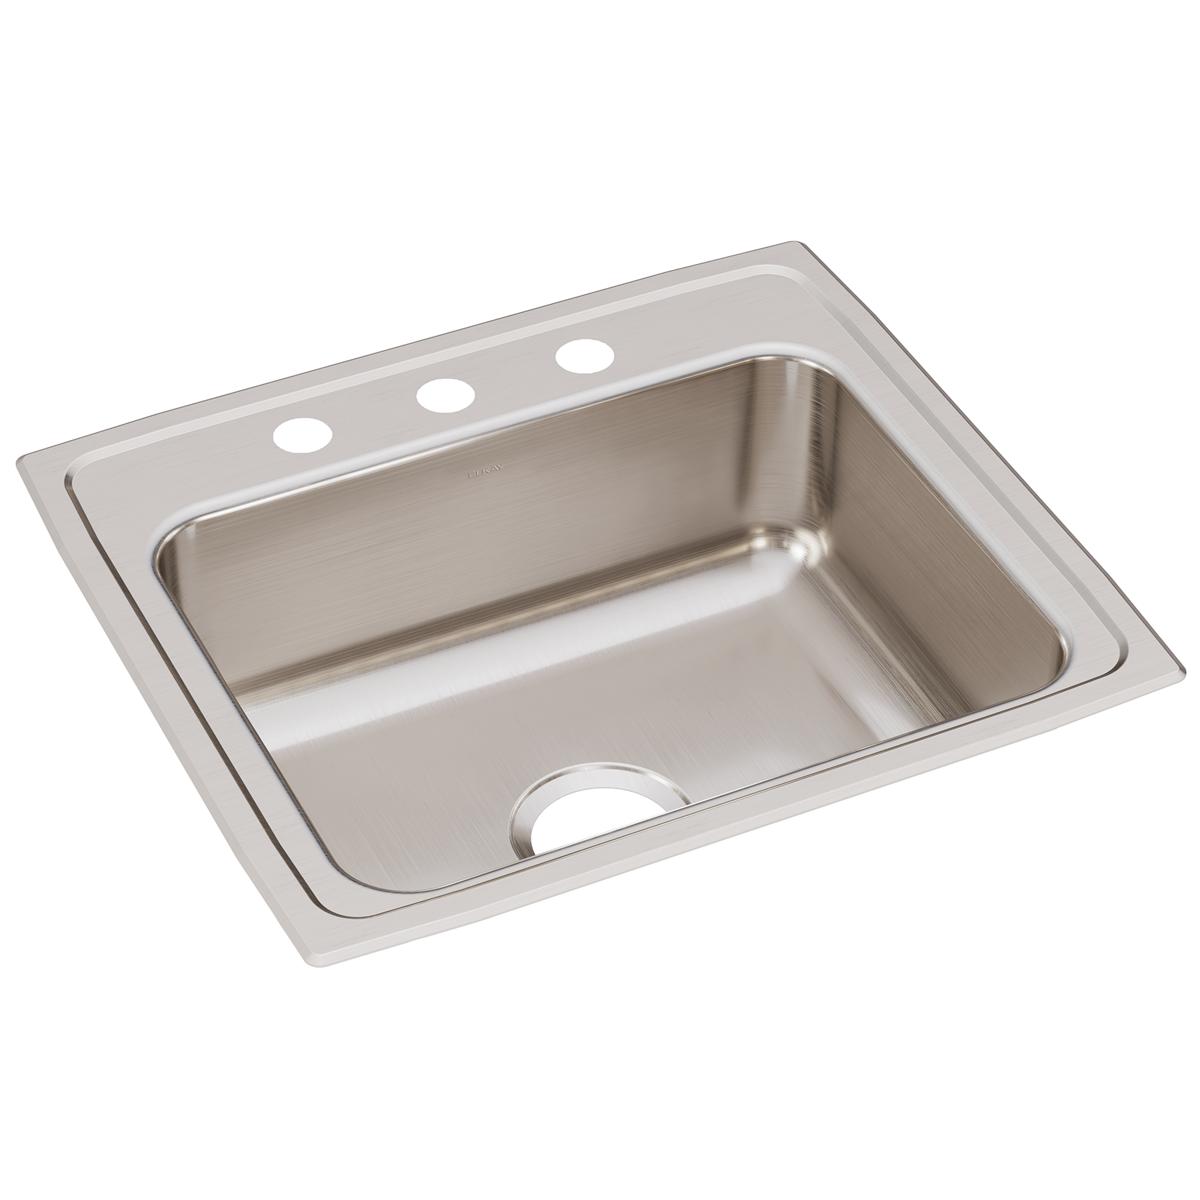 Elkay Stainless Steel Single Bowl Drop-in Sink 650416